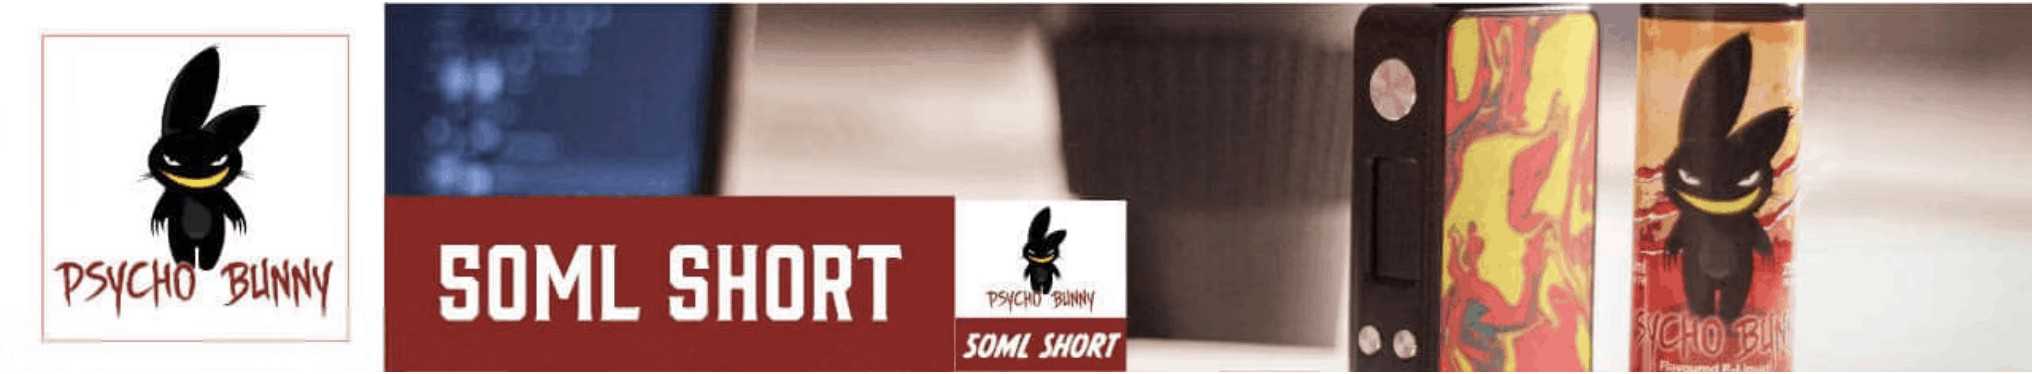 Psycho Bunny 50ml Brand banner